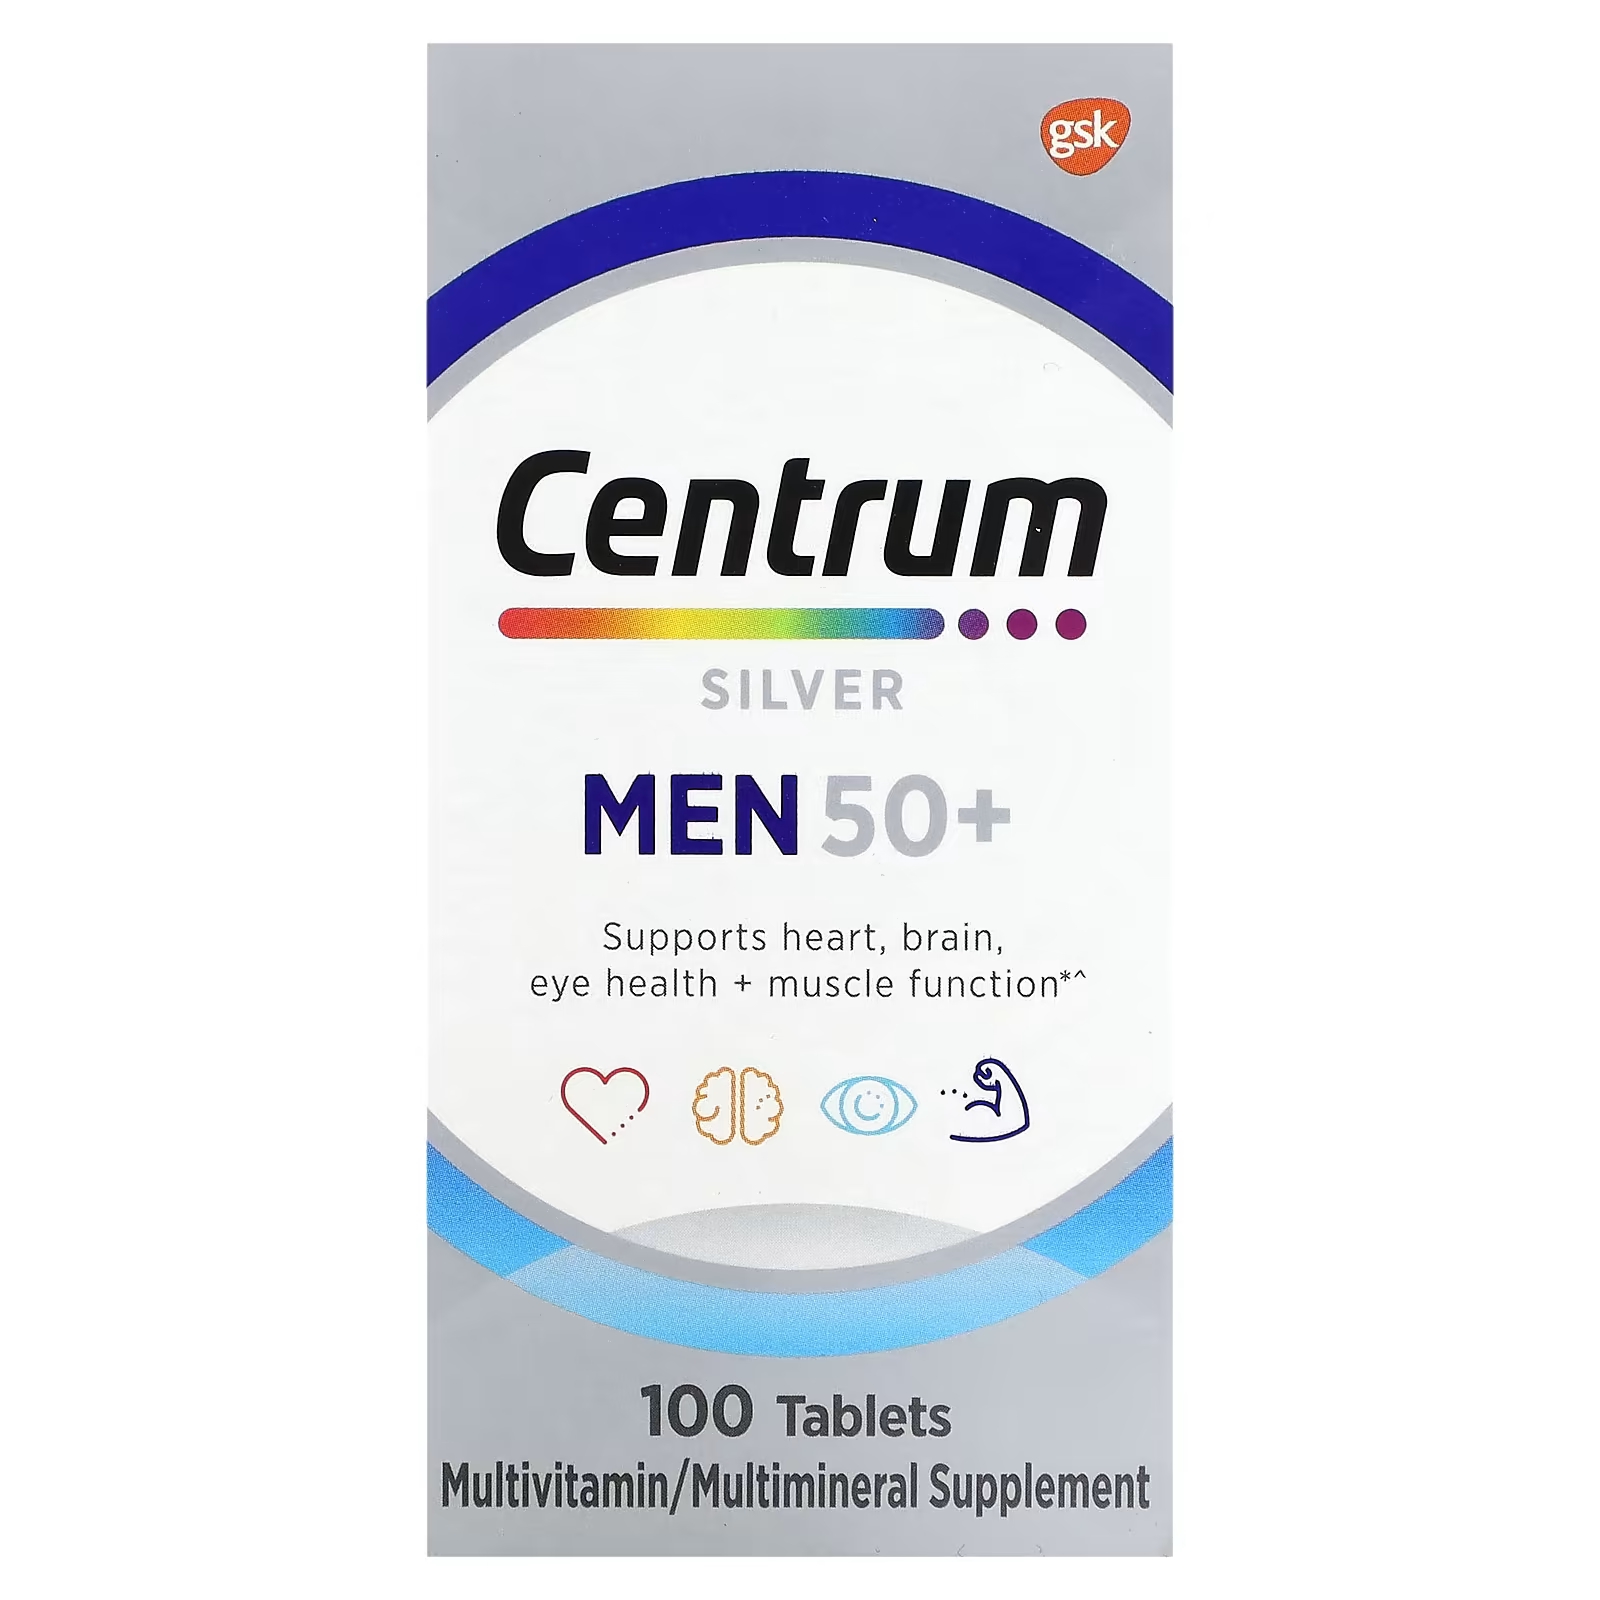 Мультивитаминная добавка Centrum Silver для мужчин 50+, 100 таблеток centrum взрослые от 50 лет в размерах мини 180 таблеток